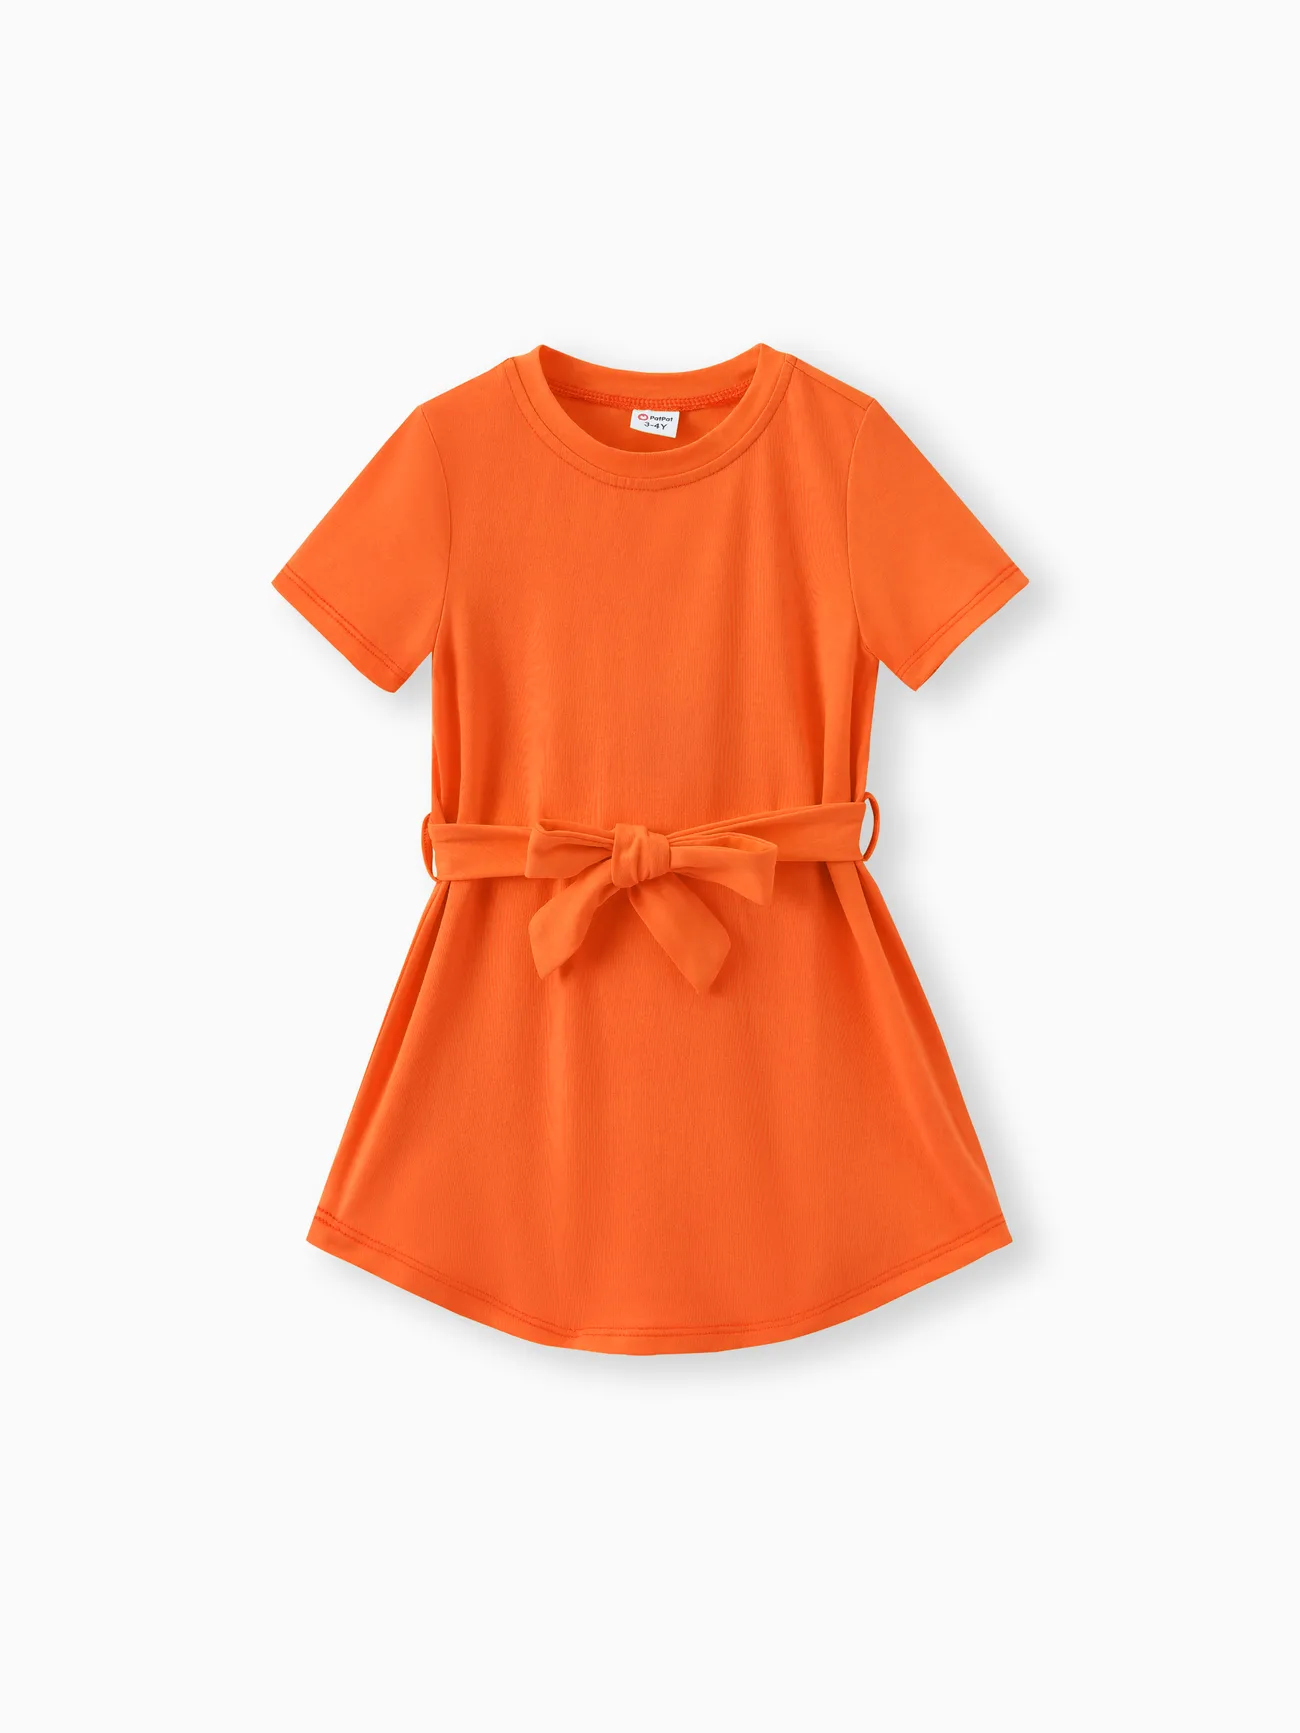 Toddler Girl Solid Curved Hem Short-sleeve Belted Dress Orange color big image 1